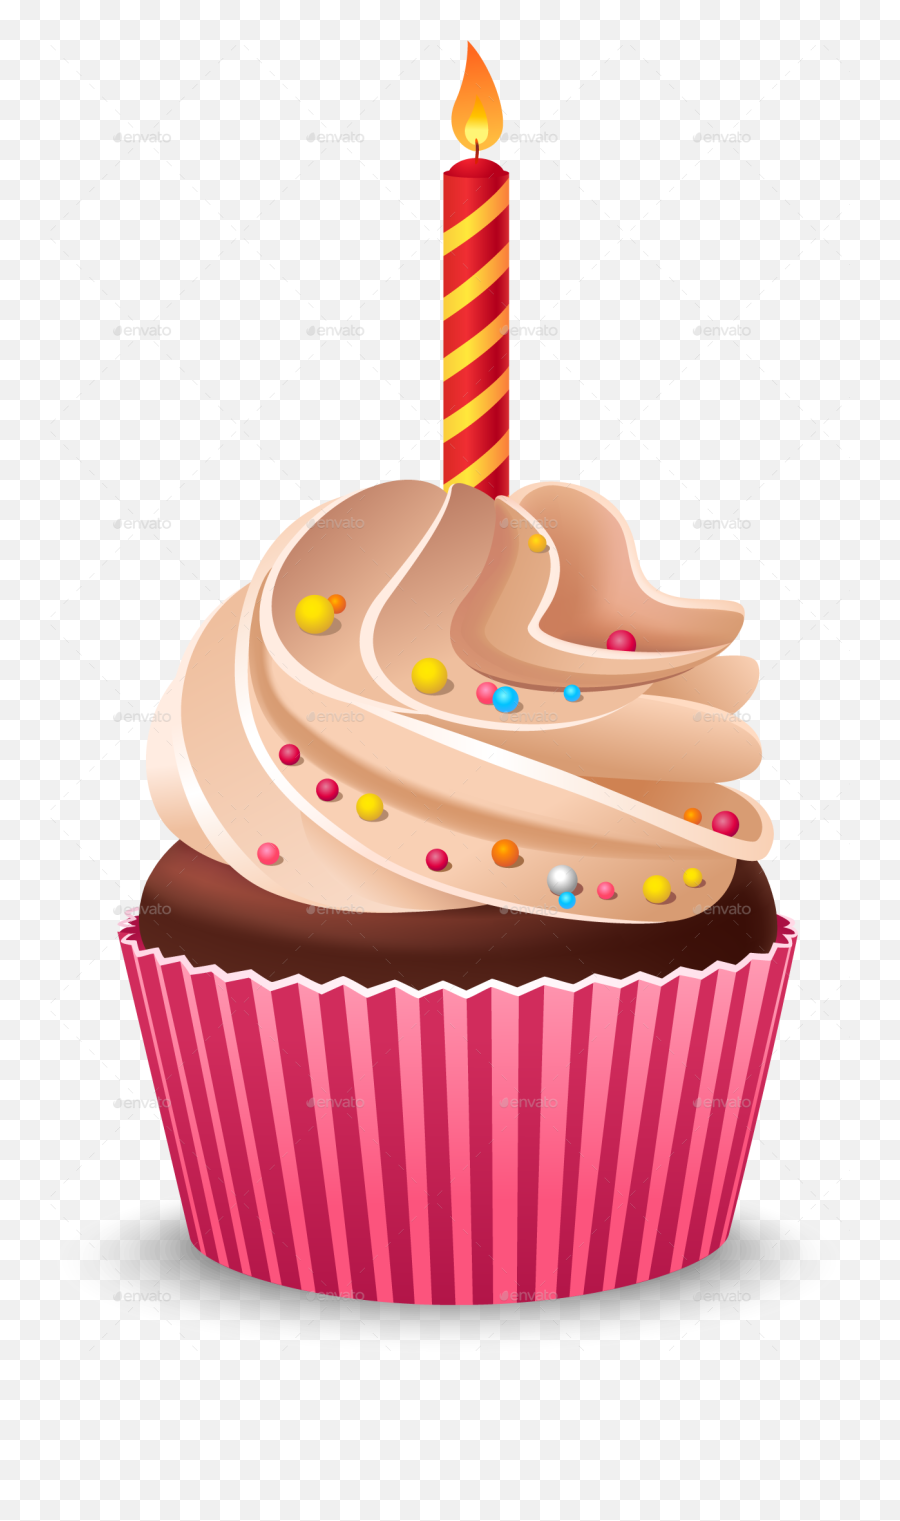 Cupcake Birthday Cake Cream Muffin - Birthday Cupcake Clipart Transparent Background Emoji,Muffin Emoji